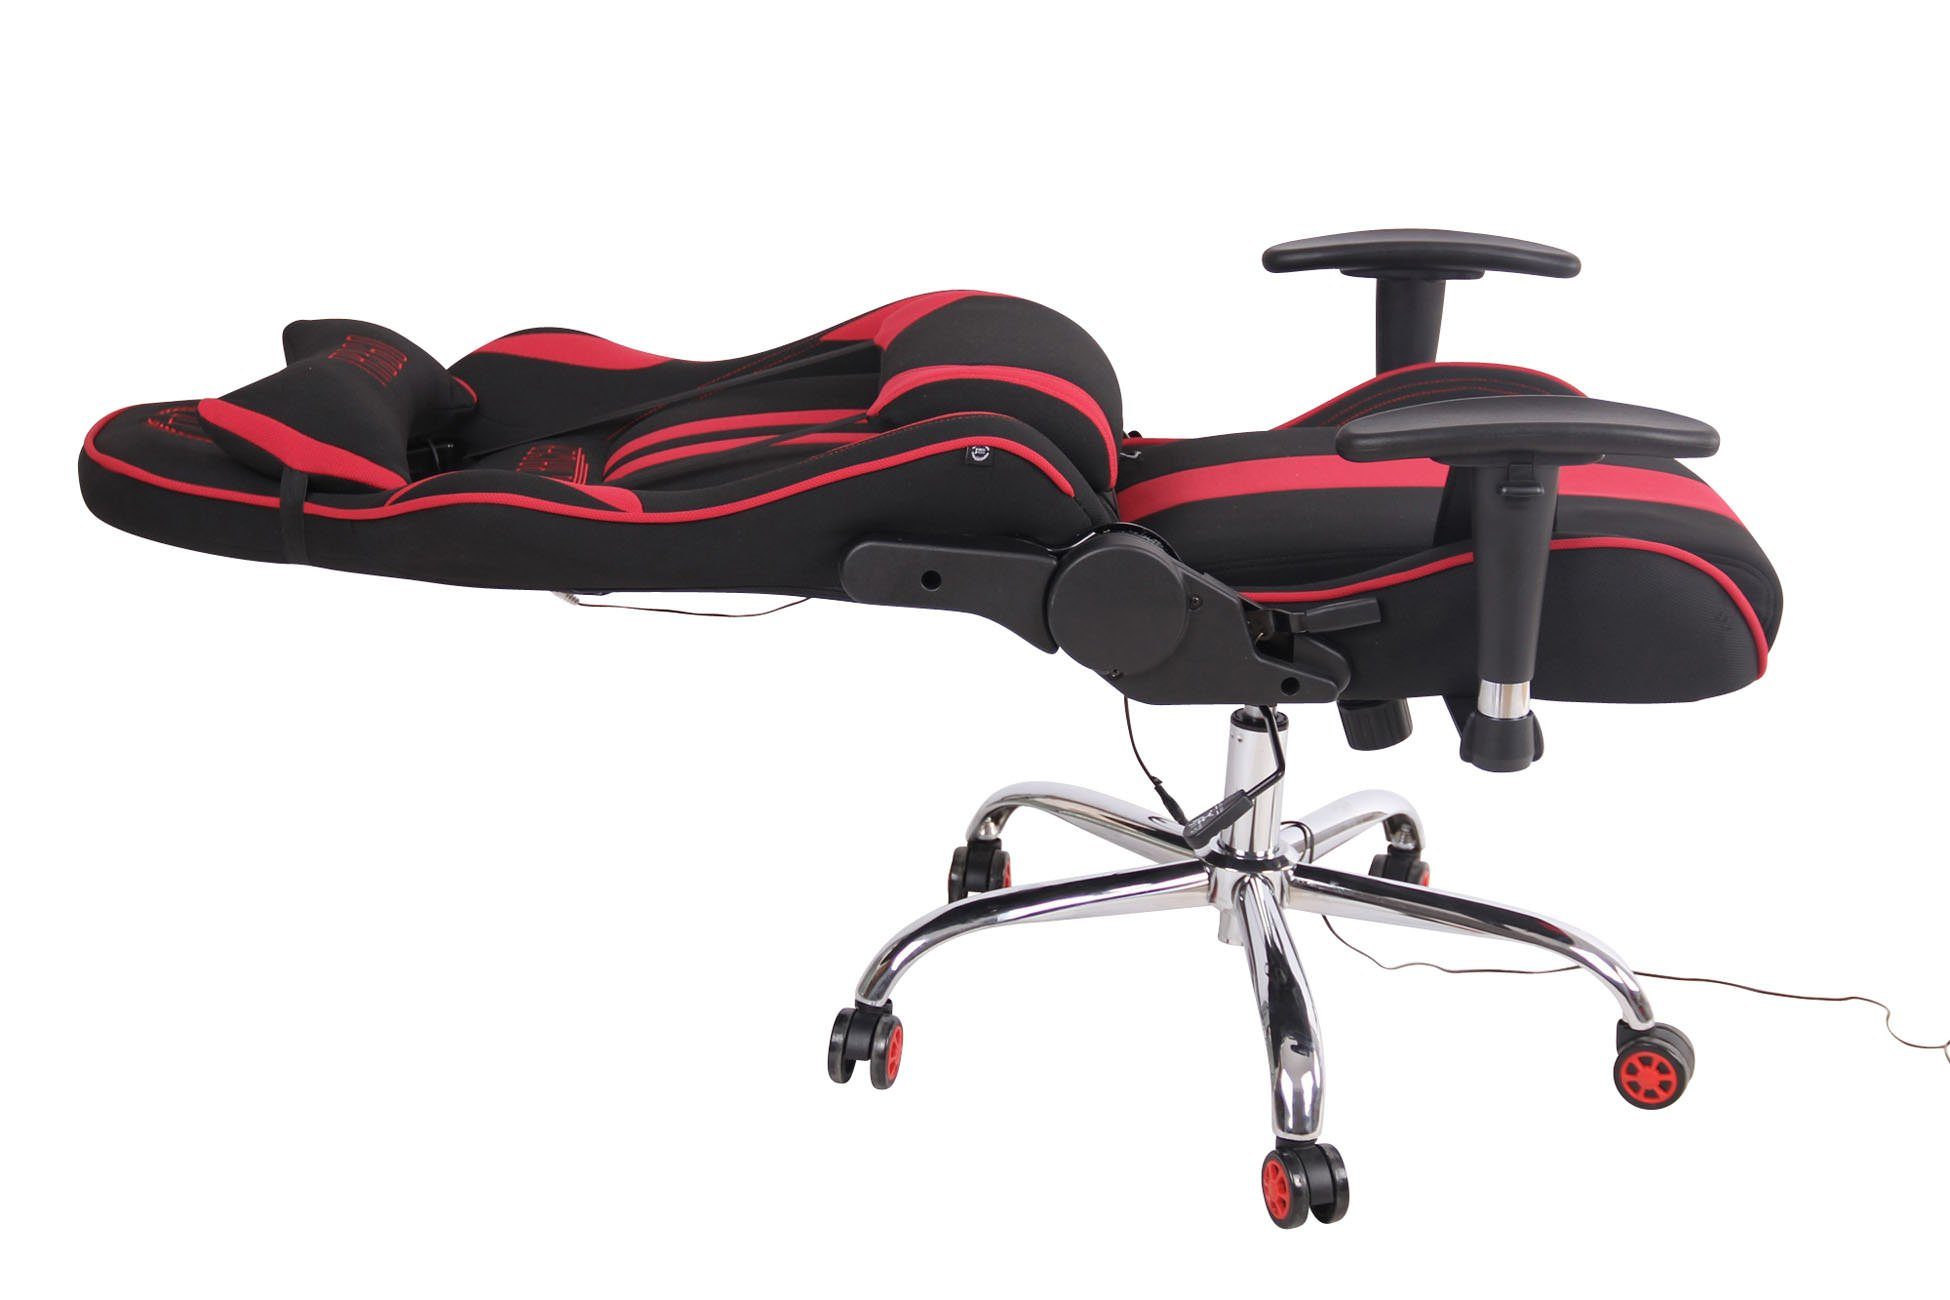 CLP schwarz/rot Stoff, Chair Gaming Massagefunktion Limit XM mit